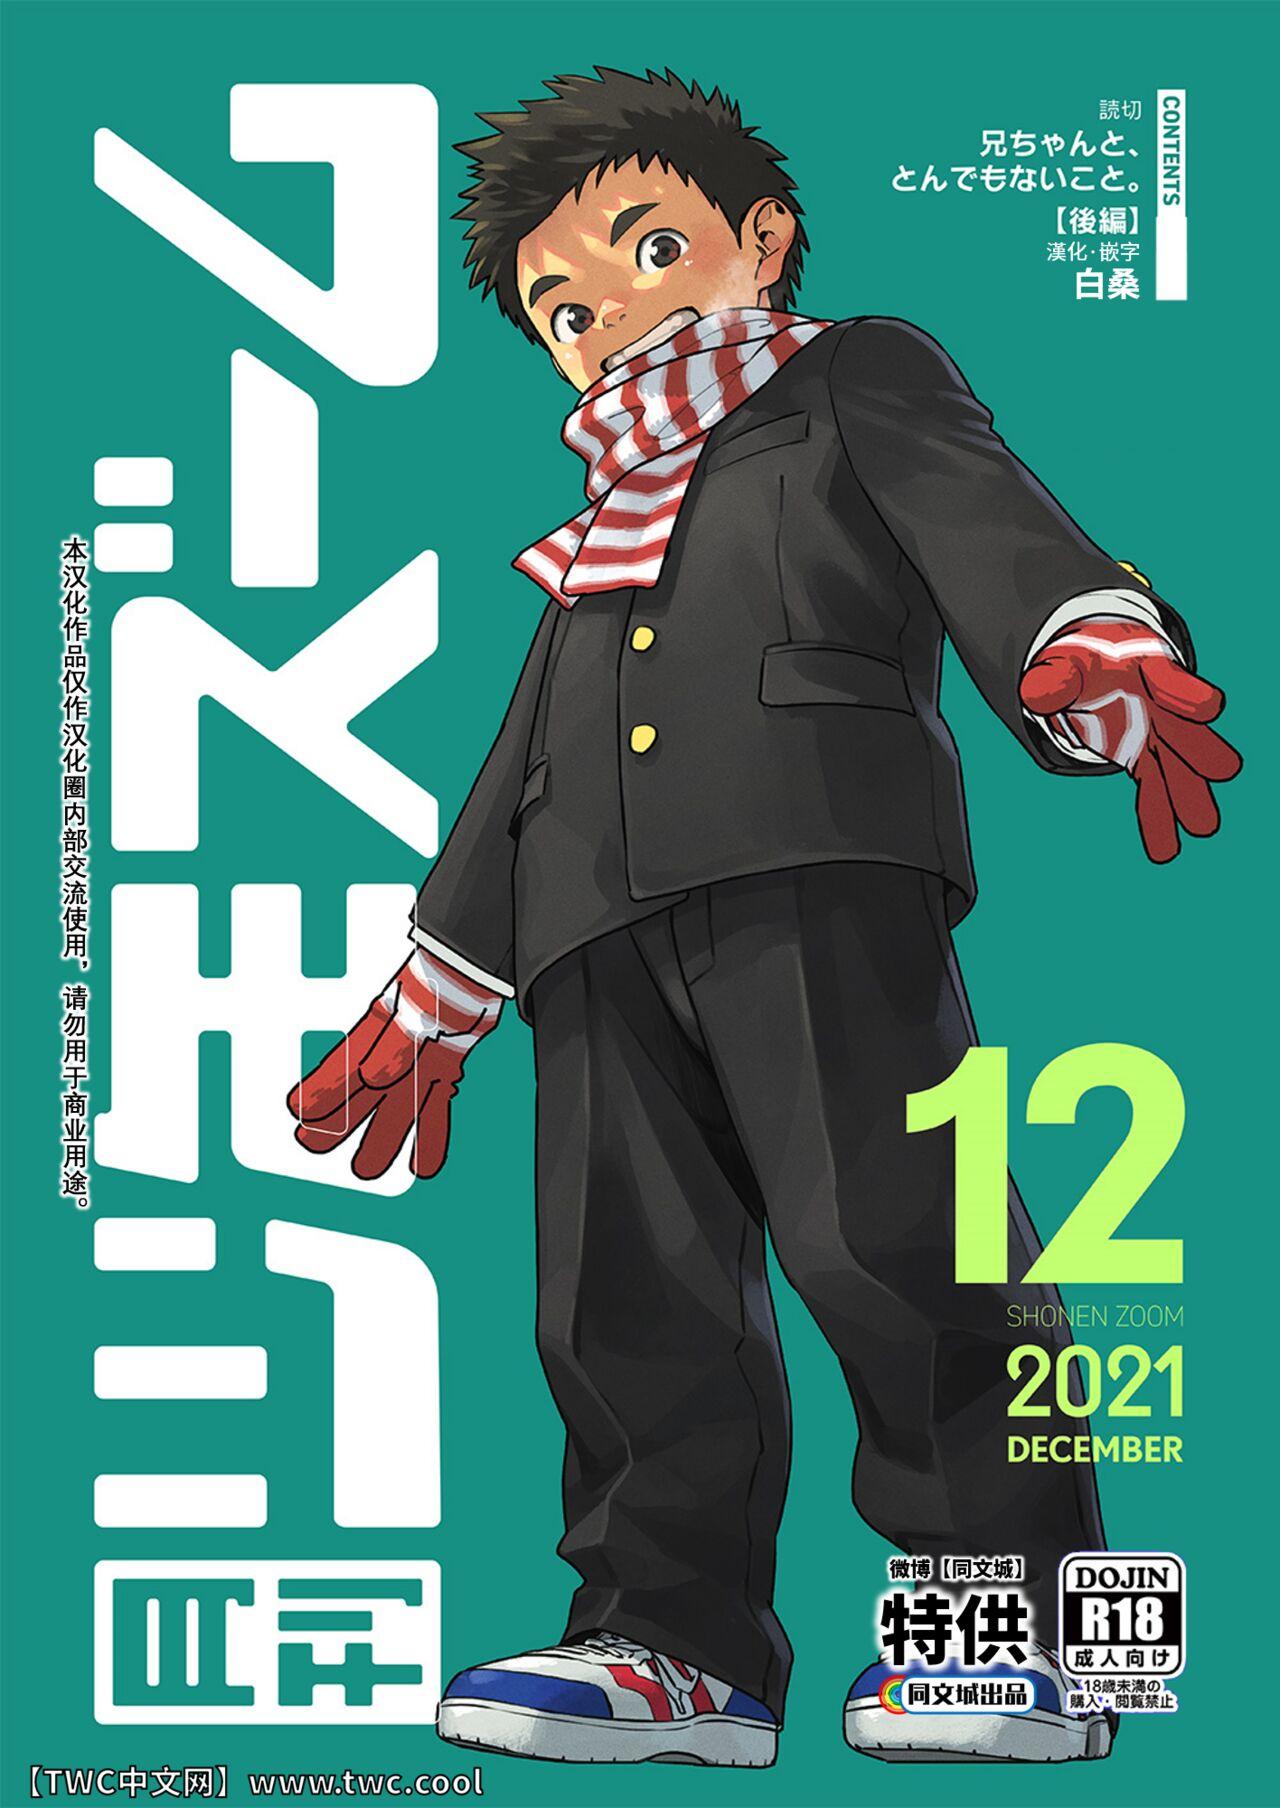 Sentones Gekkan Shounen Zoom 2021-12 Latex - Picture 1